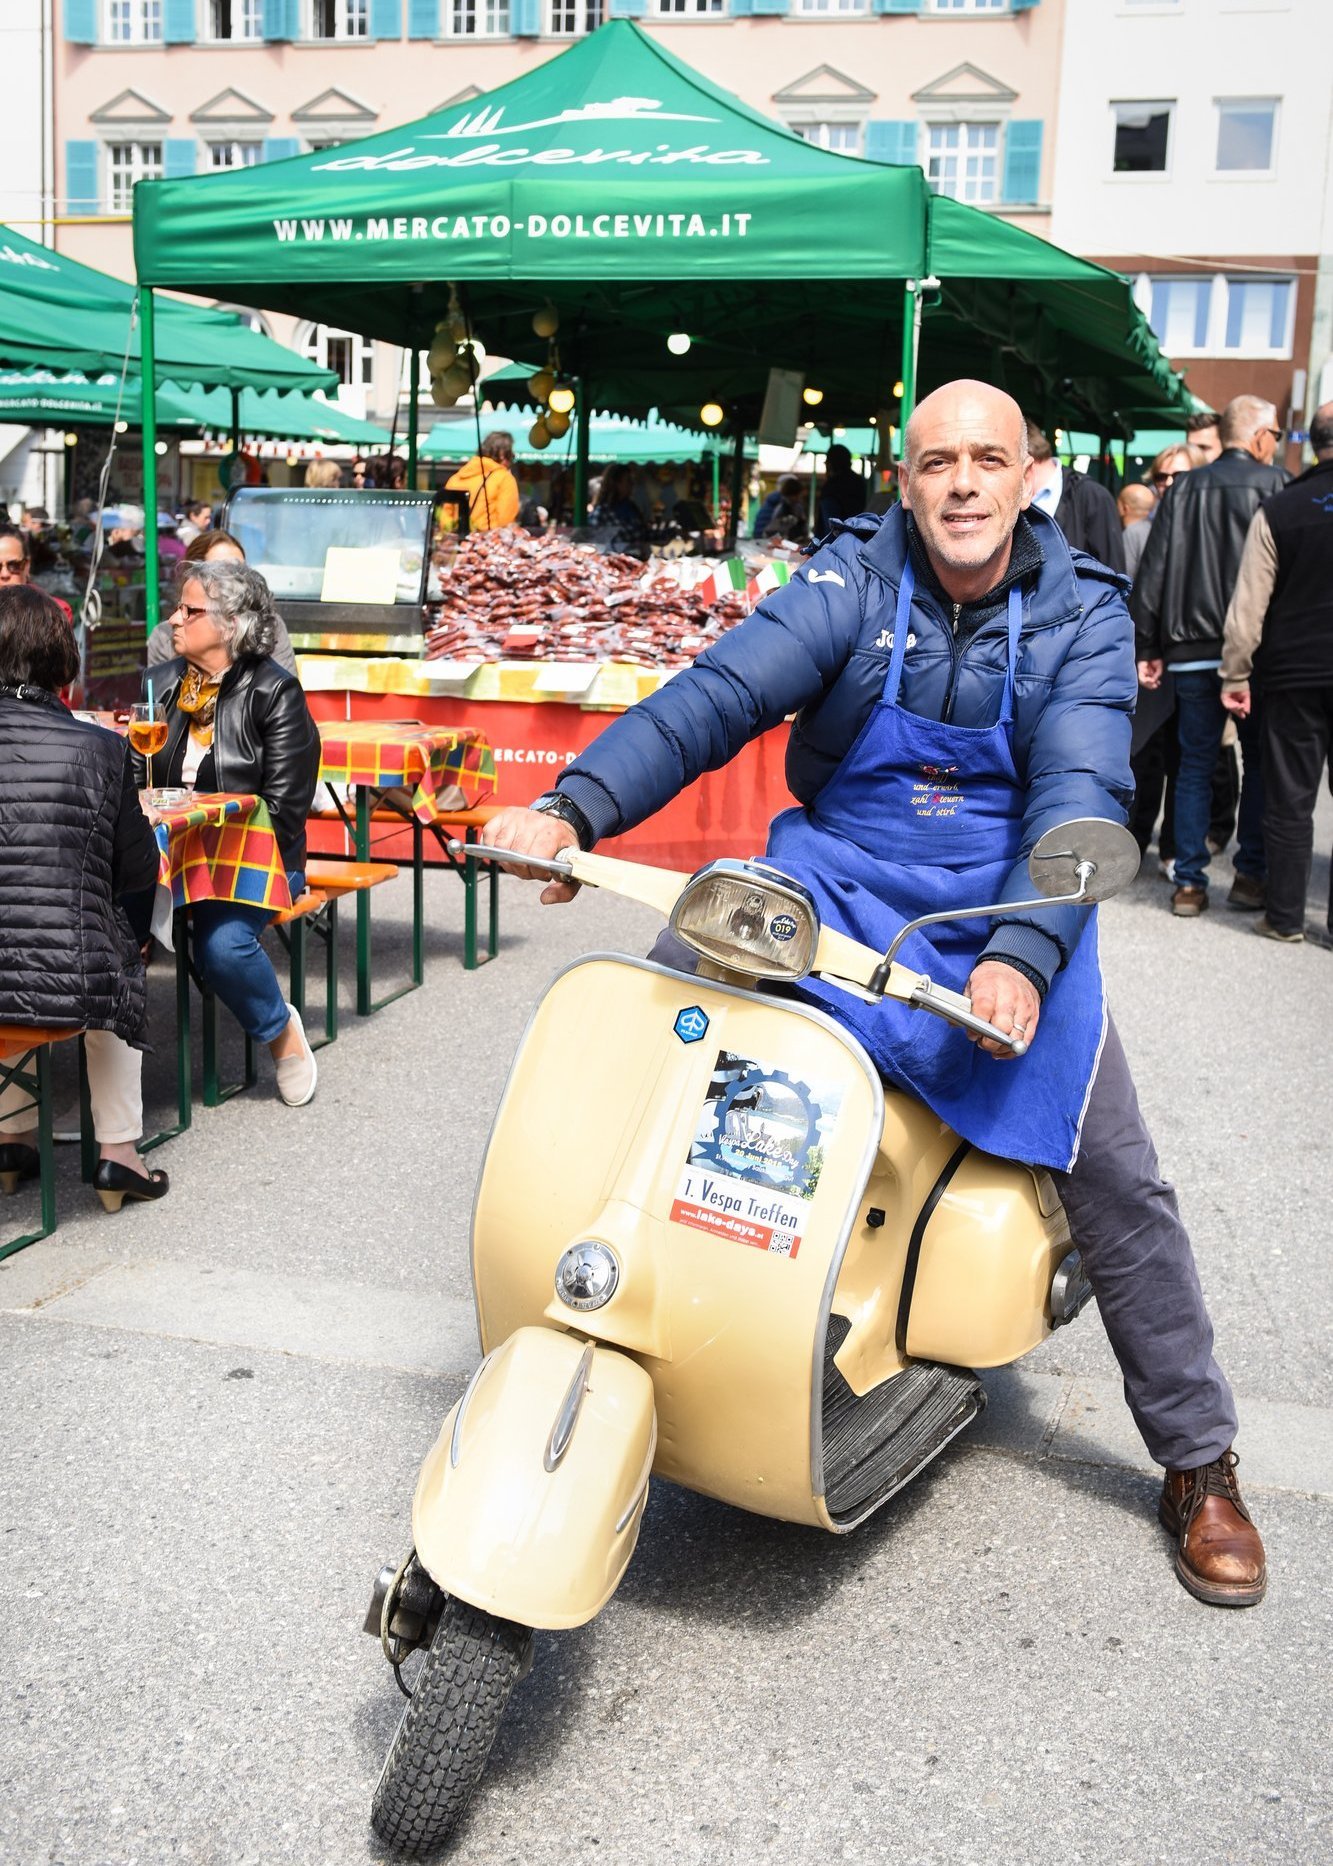 Ein Mann auf einer Vespa auf dem Italienischen Markt in Bregenz